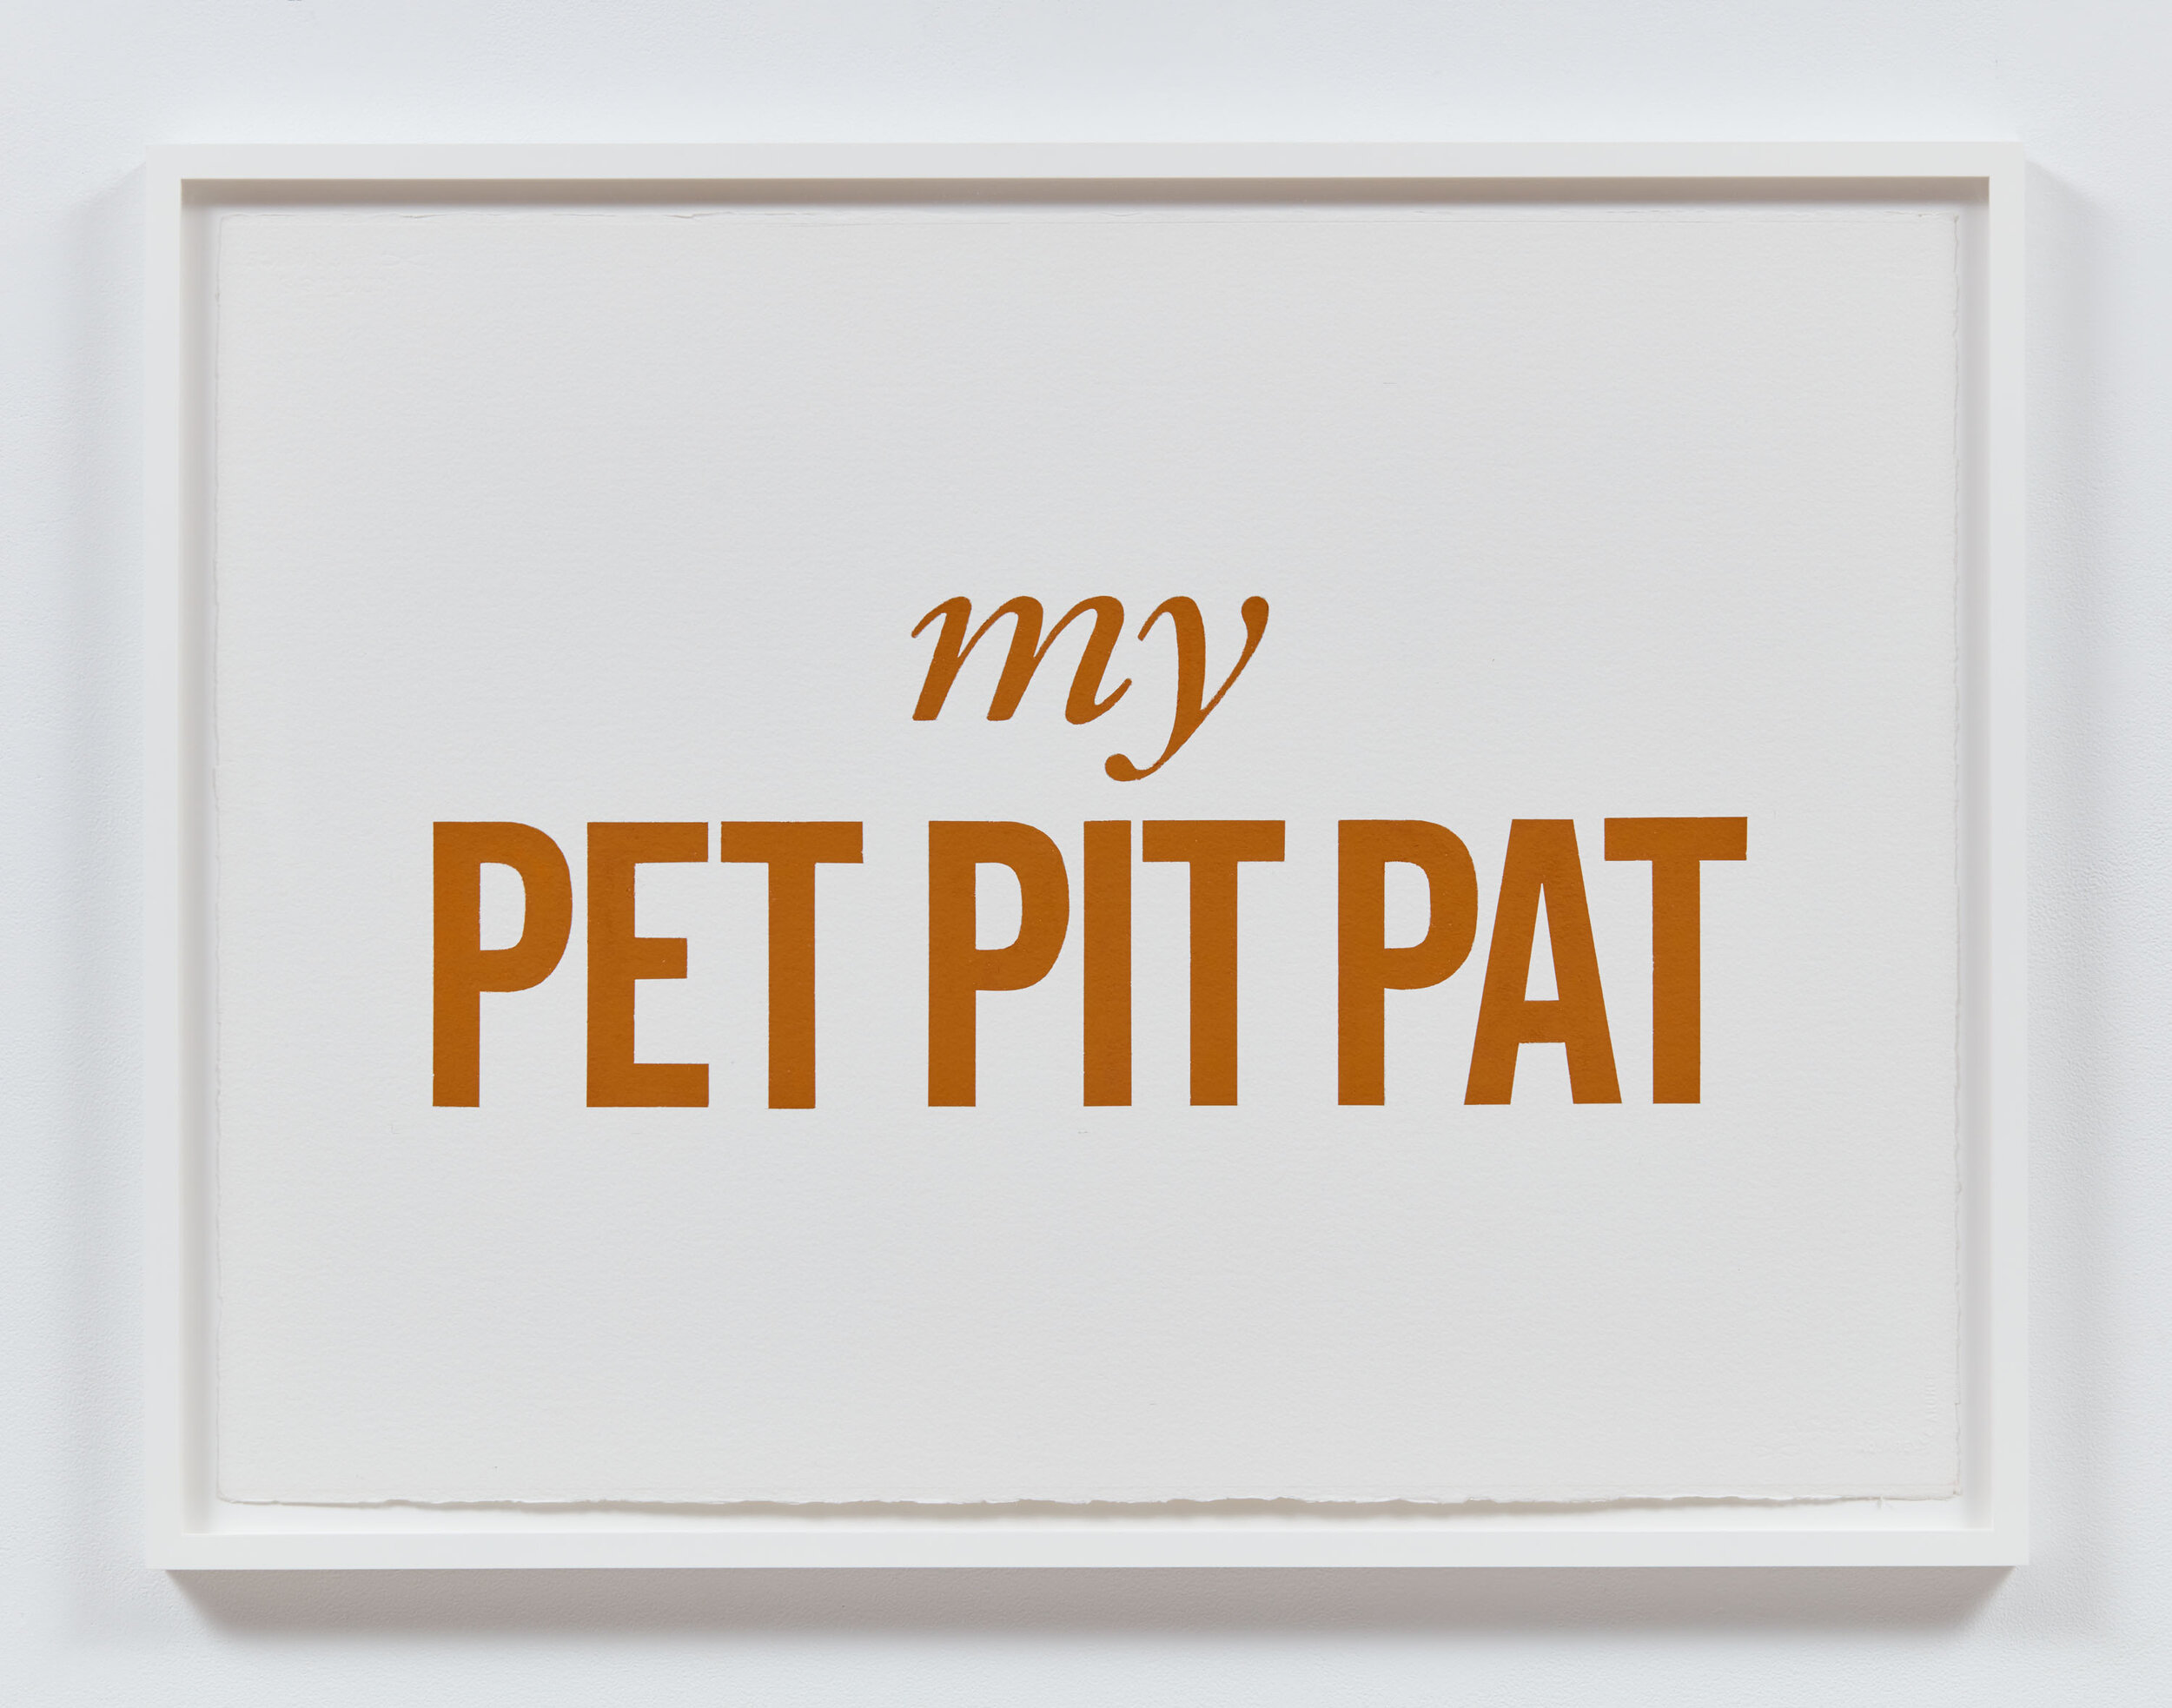 My Pet Pit Pat, 2021